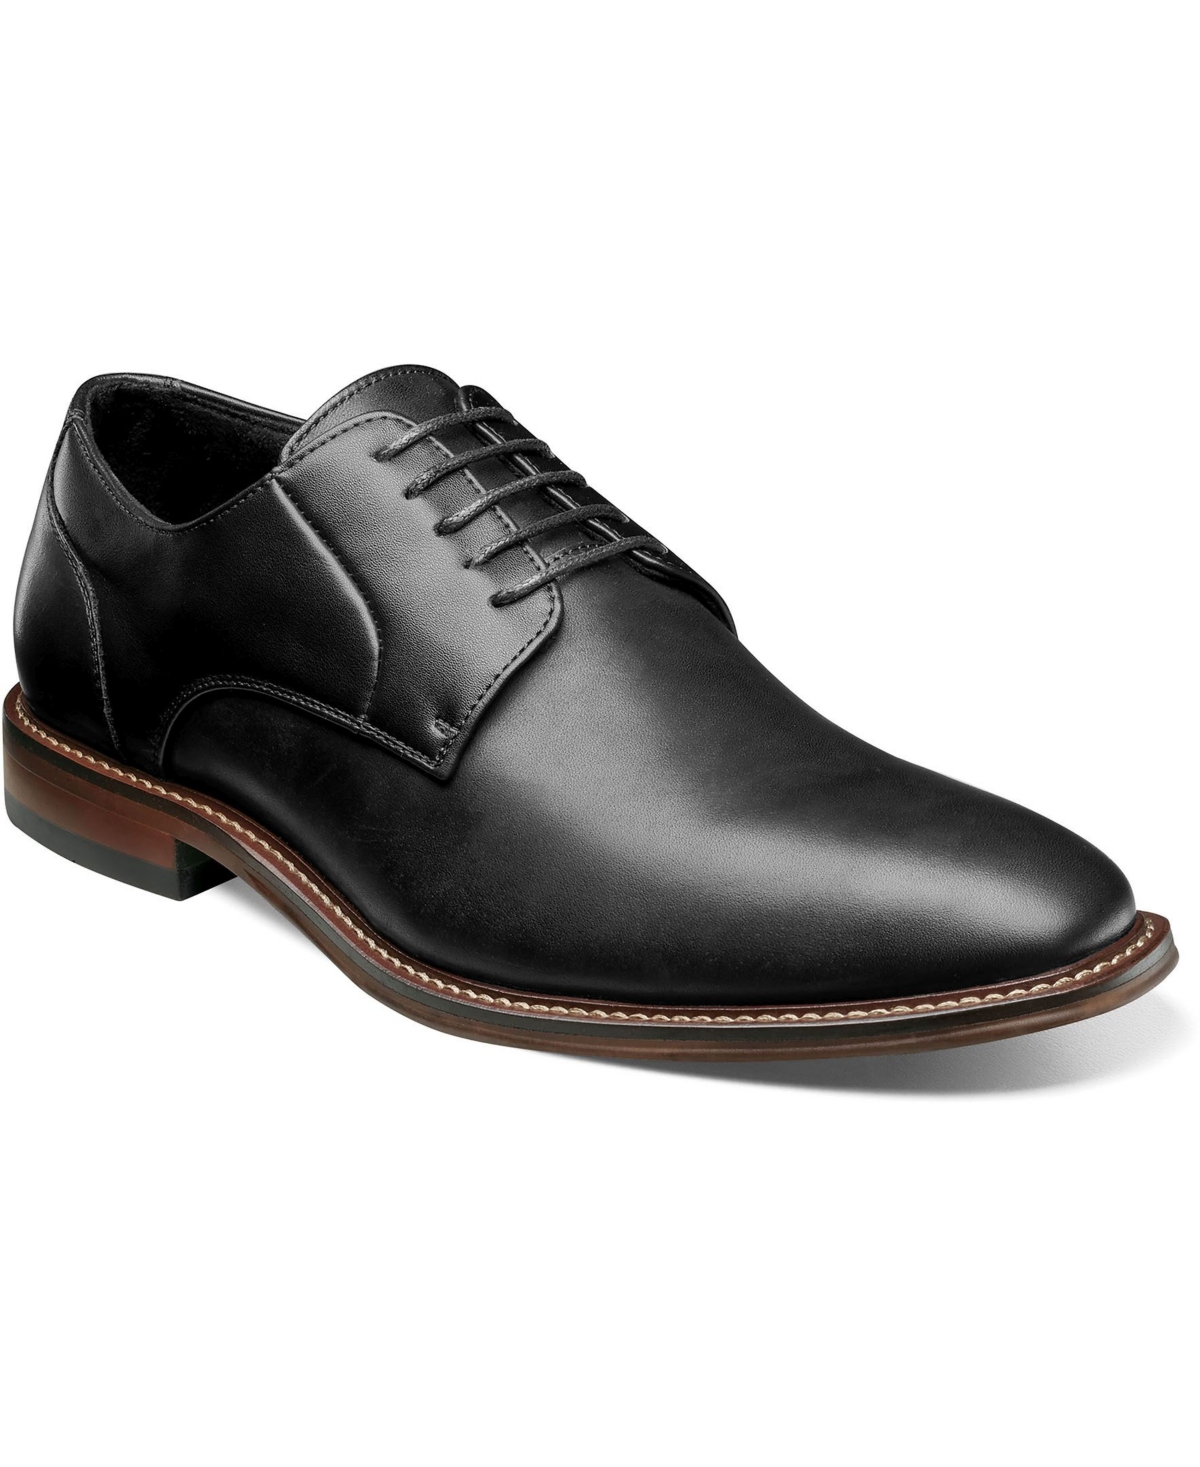 Men's Marlton Plain Toe Oxford Shoes - Black